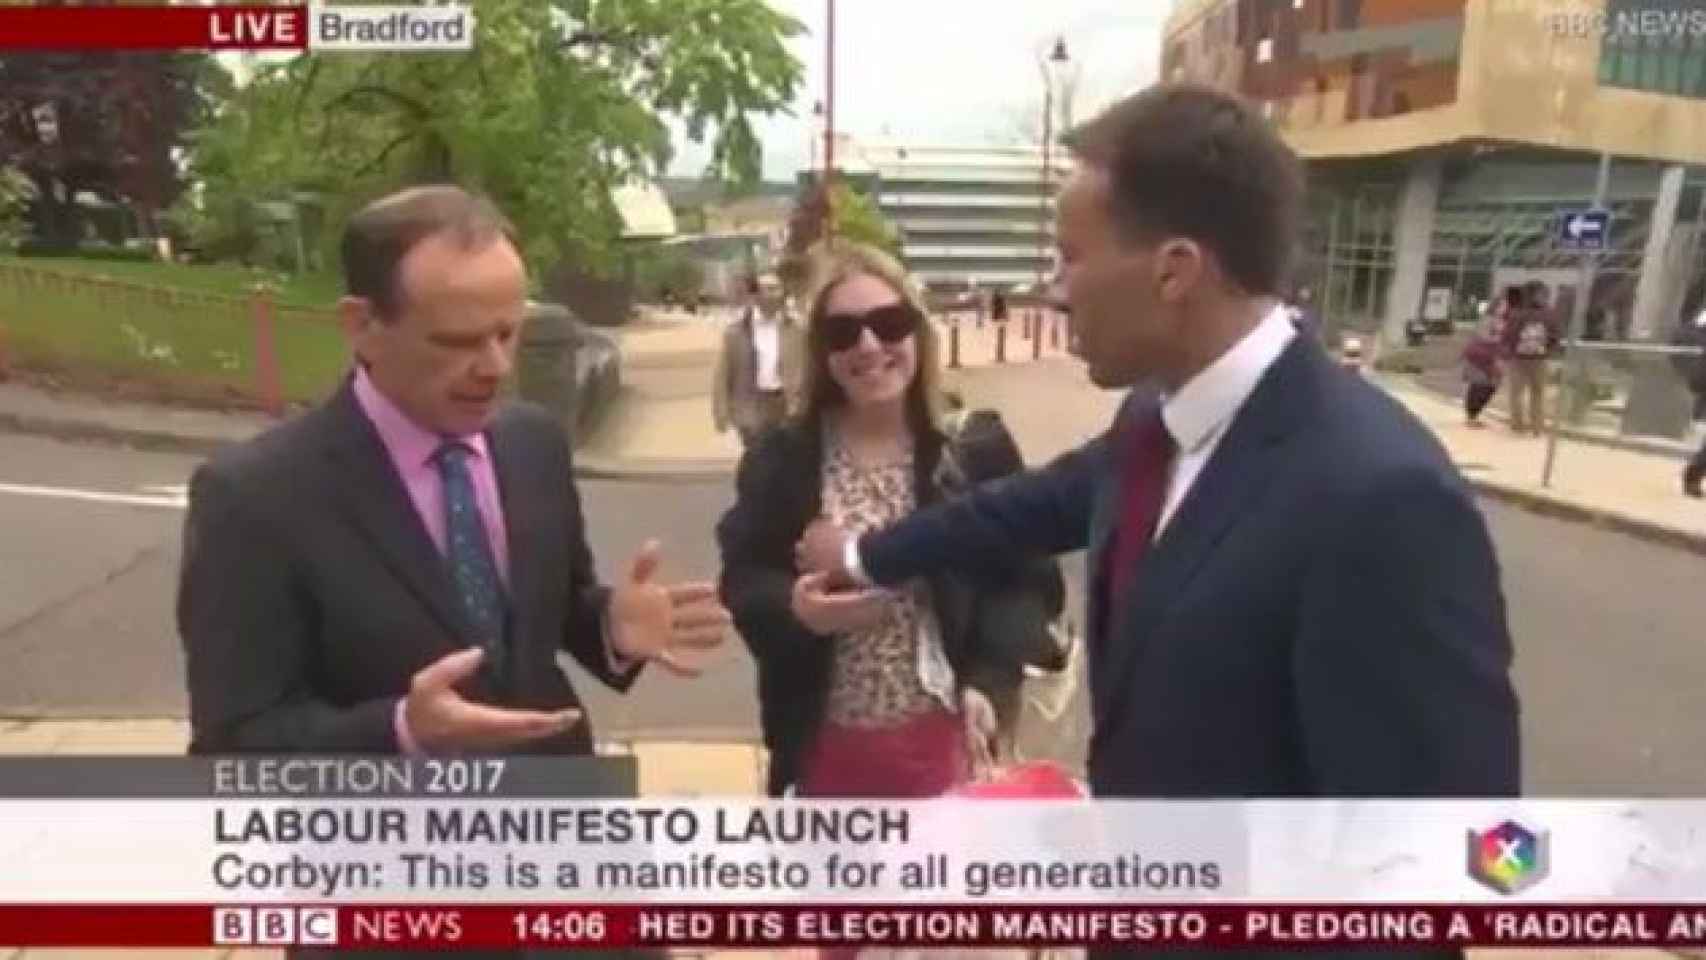 Momento en el que el periodista de la BBC toca el pecho accidentalmente a una mujer en directo / BBC